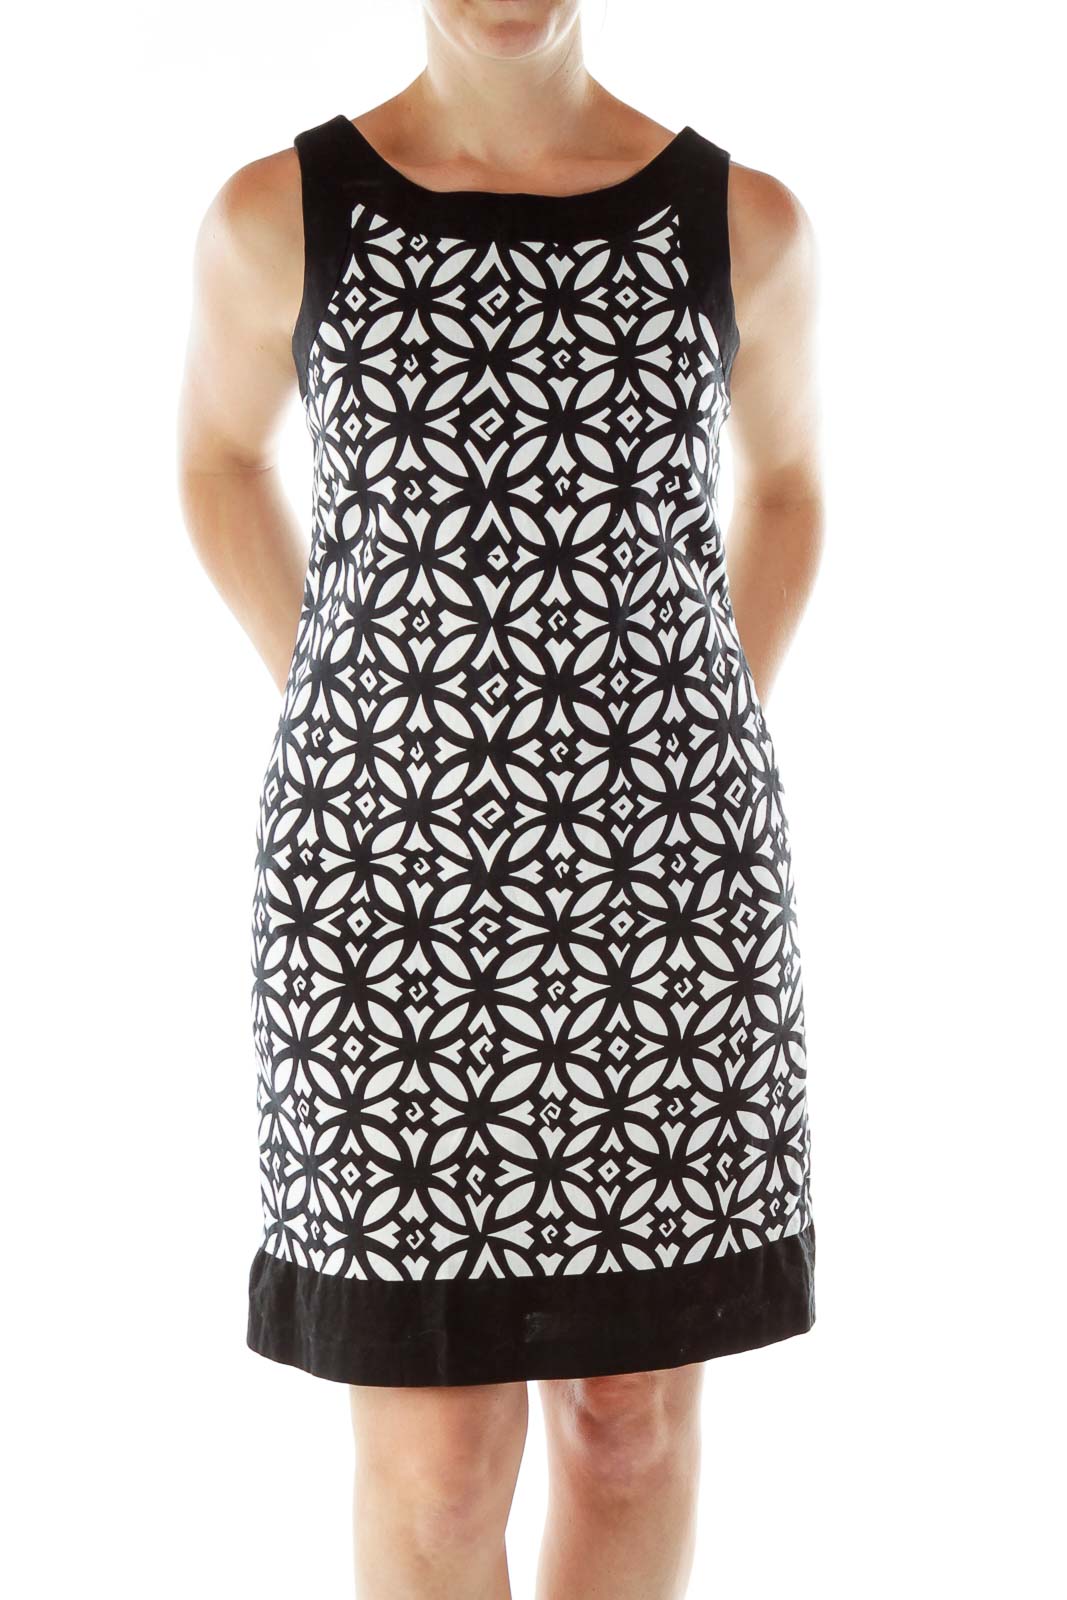 Black White Geometric Print A-Line Dress Front